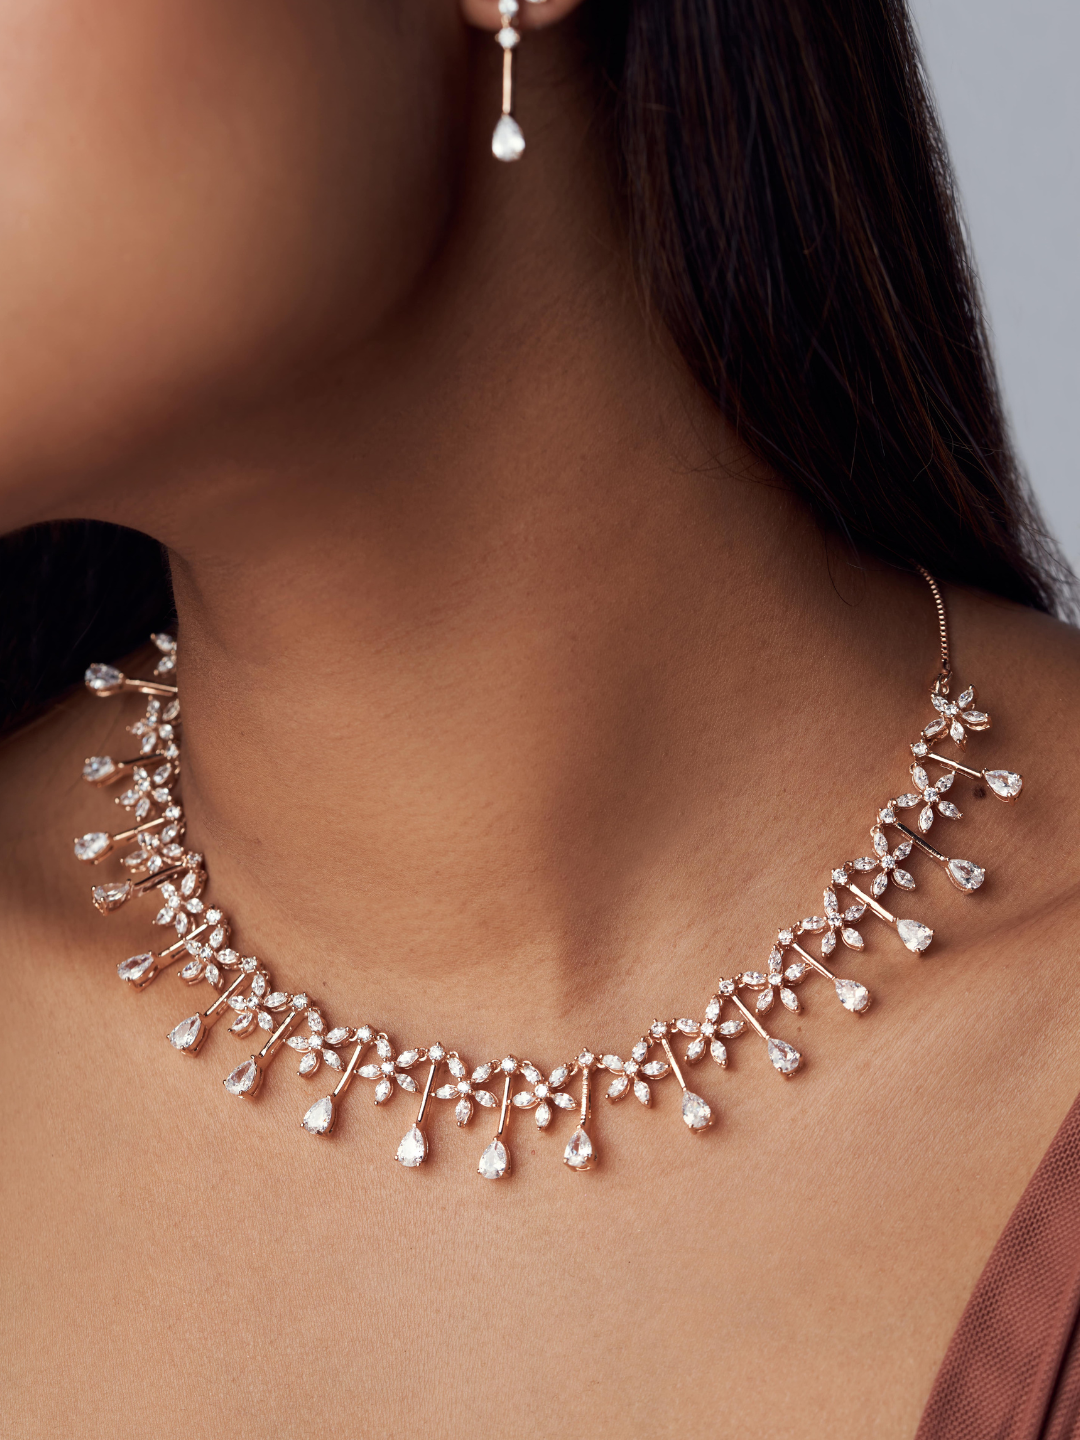 Dazzling Droplets Necklace - Zeraki Jewels 